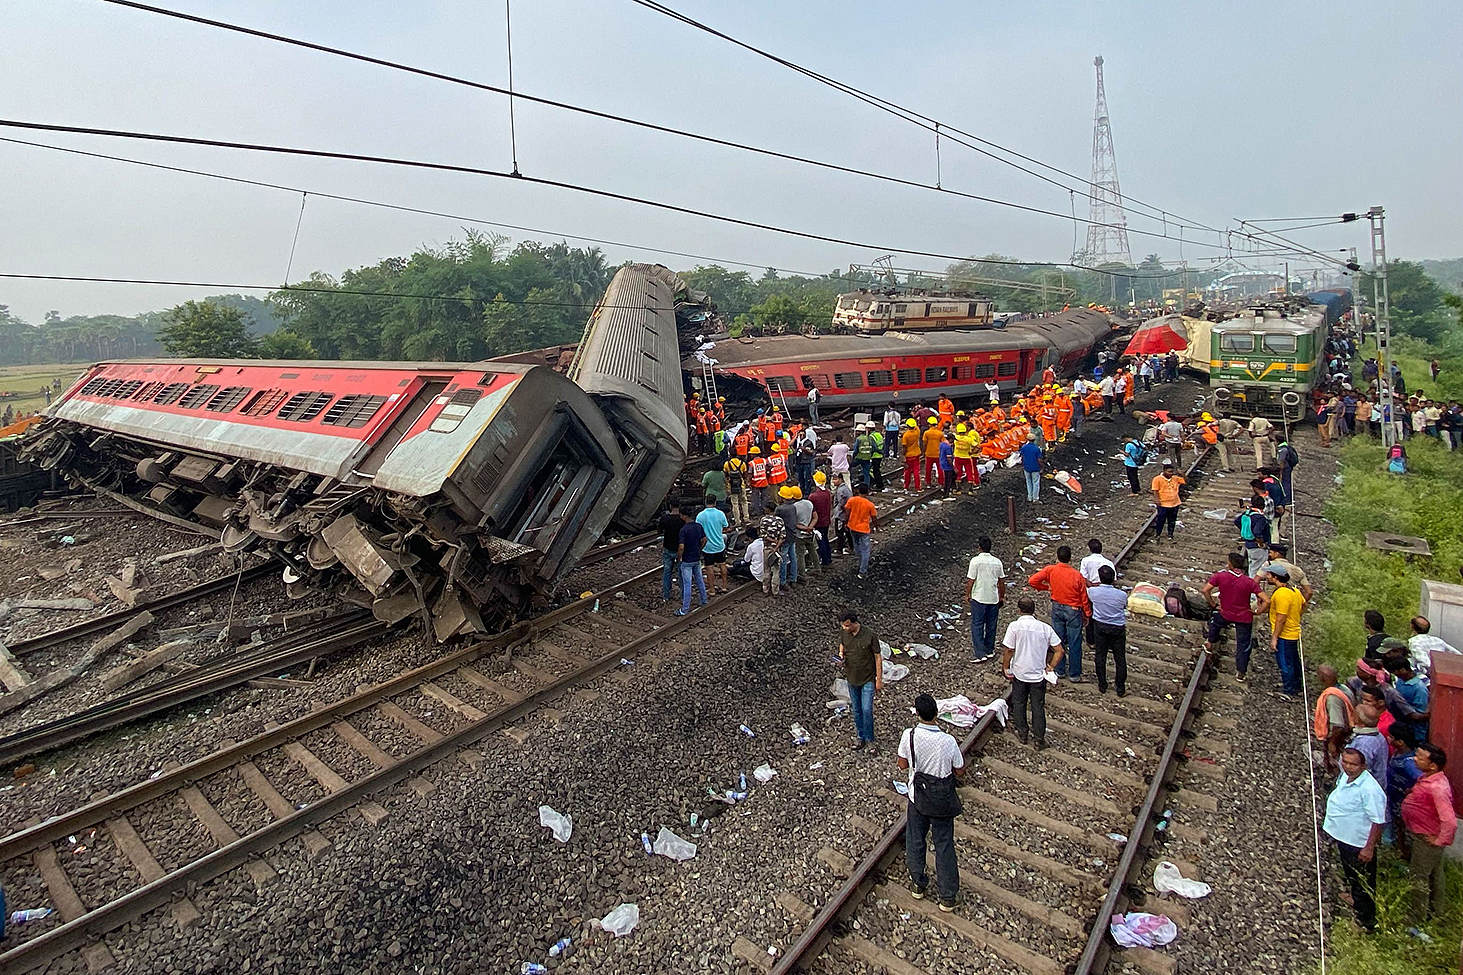 Ihmiset ovat kokoontuneet kaatuneiden junavaunujen ympärille. Kuvassa näkyy myös paljon pelastustyöntekijiöitä, joilla on kirkkaan oranssit vaatteet ja kypärät. Osa junavaunuista on poikittain junaradalla kaatuneena. Kuva on otettu lauantaina 3. kesäkuuta Balasoren kaupungissa Itä-Intiassa.